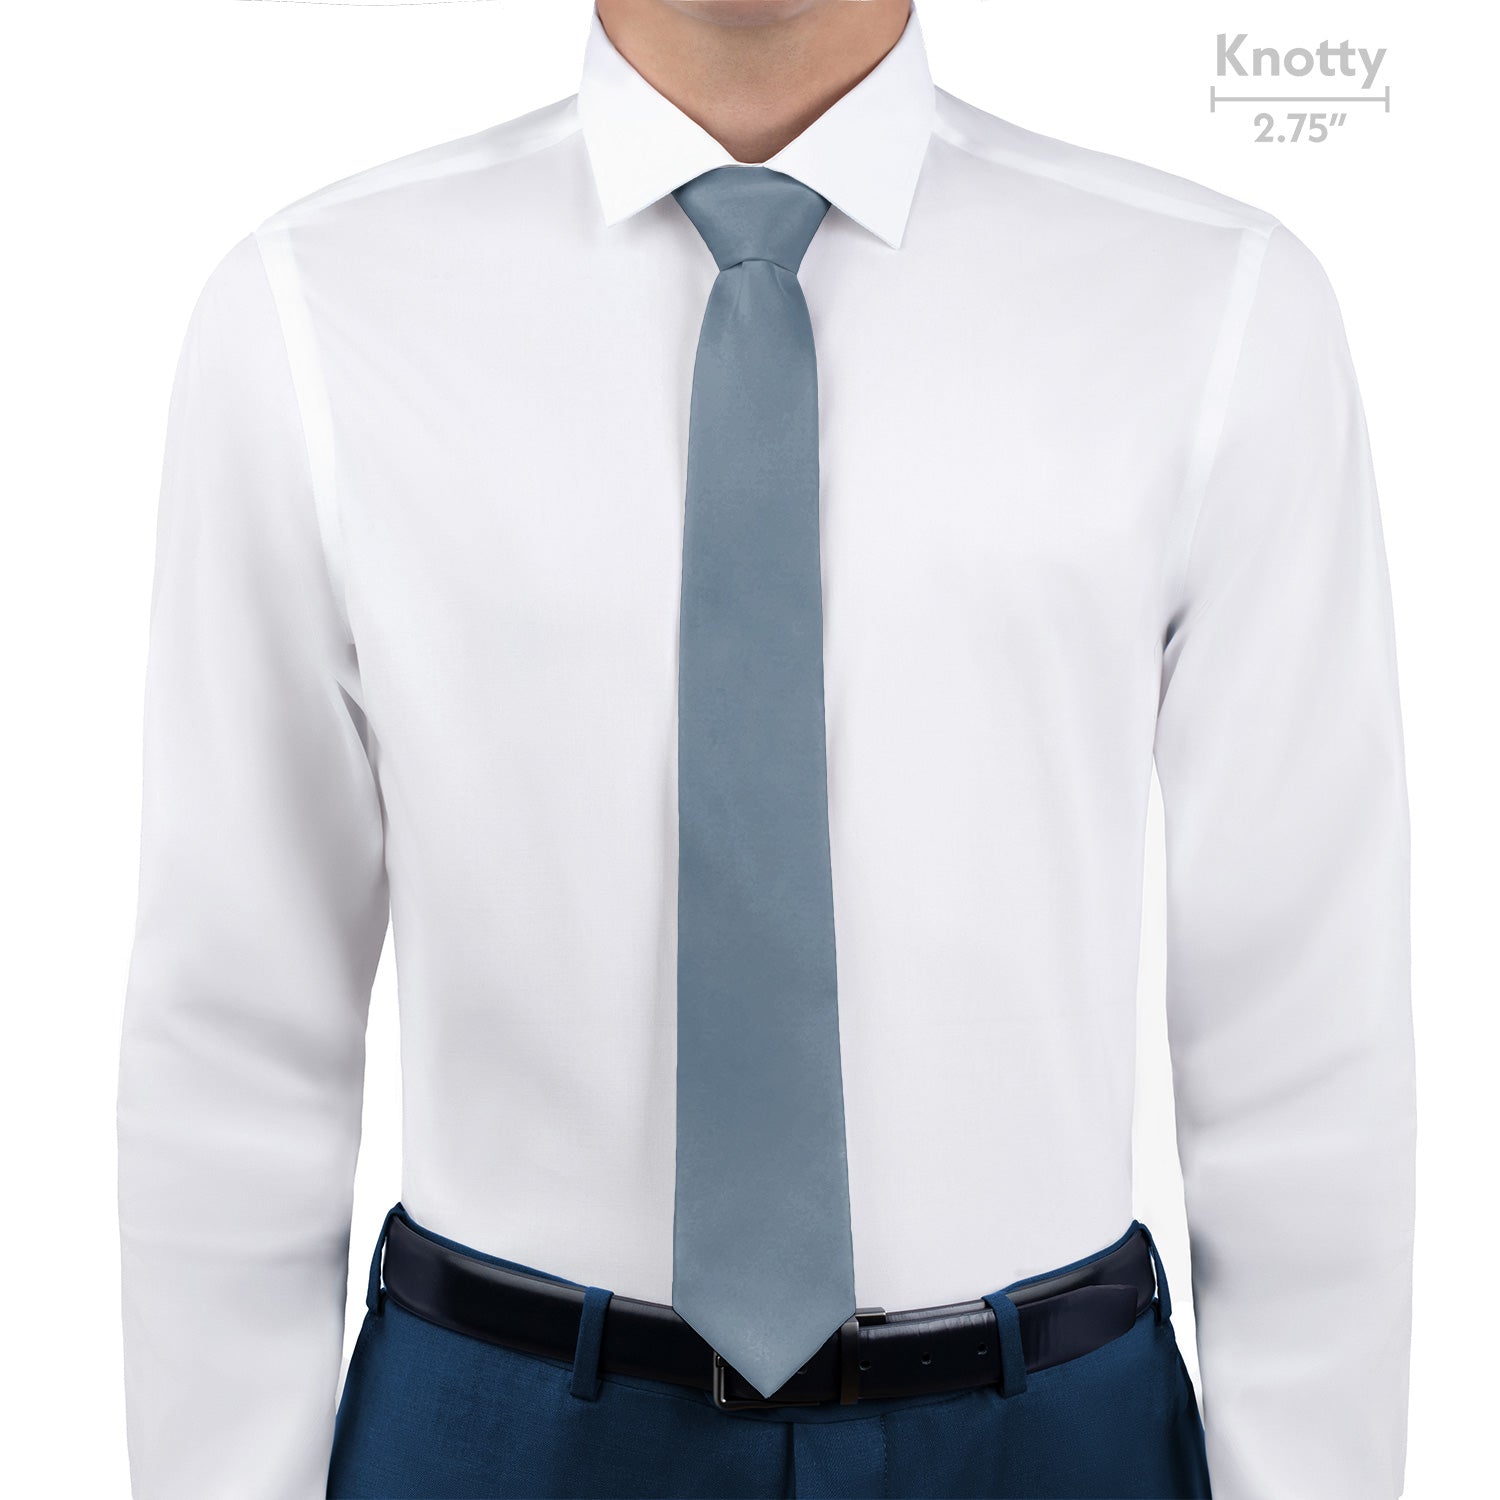 Azazie Dusty Blue Necktie - Knotty - Knotty Tie Co.